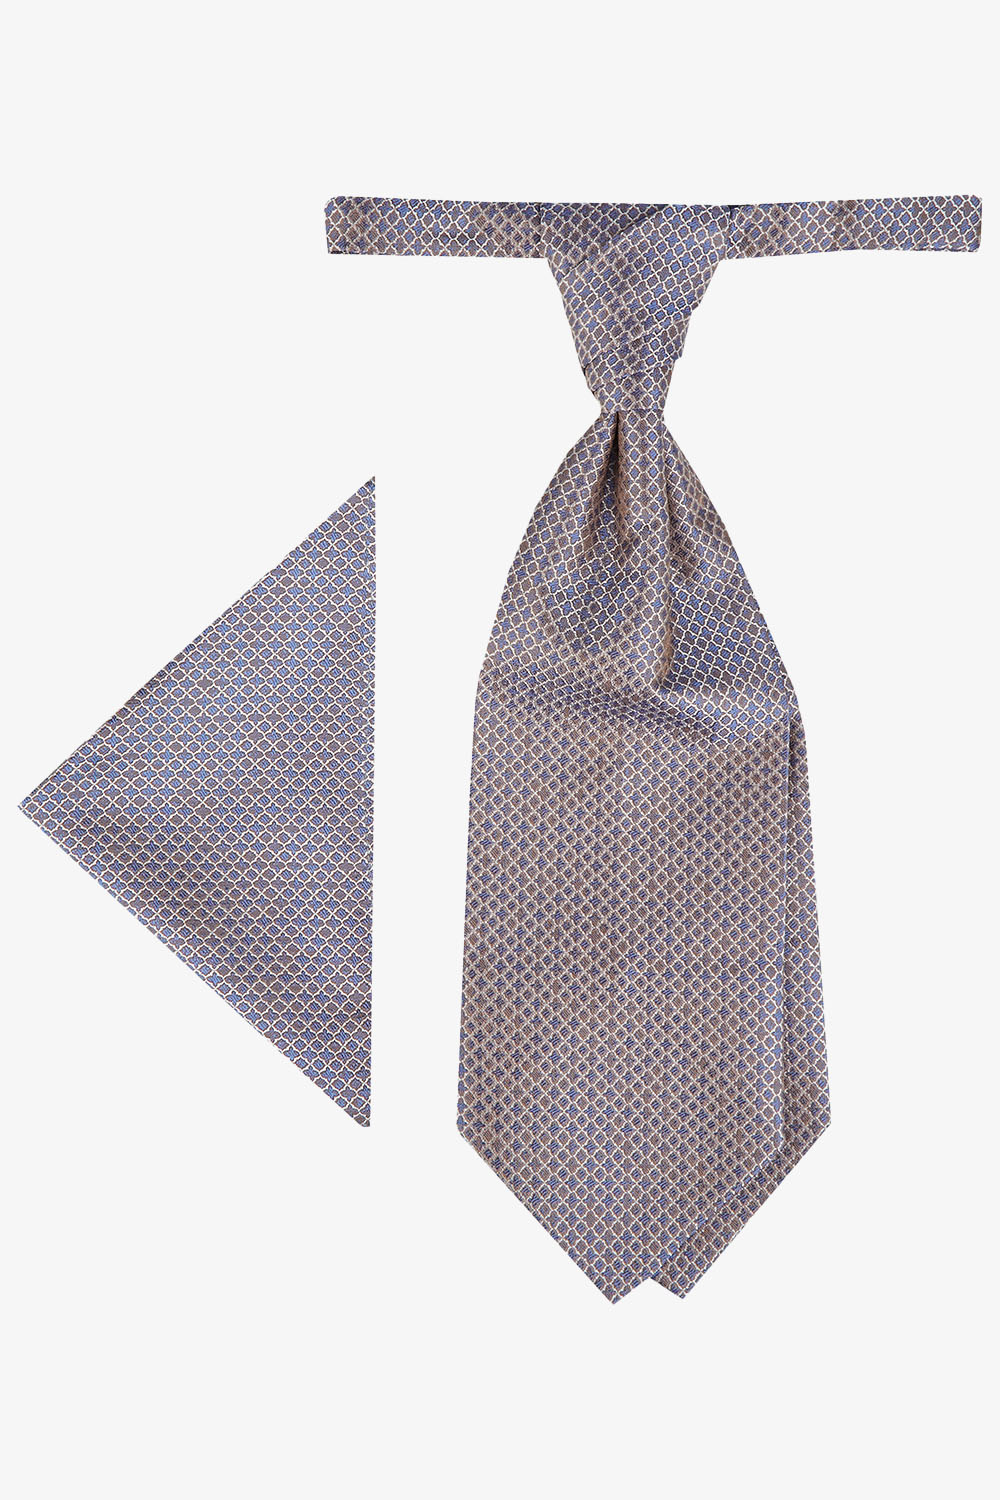 WILVORST óarany francia nyakkendő szett 427201-66